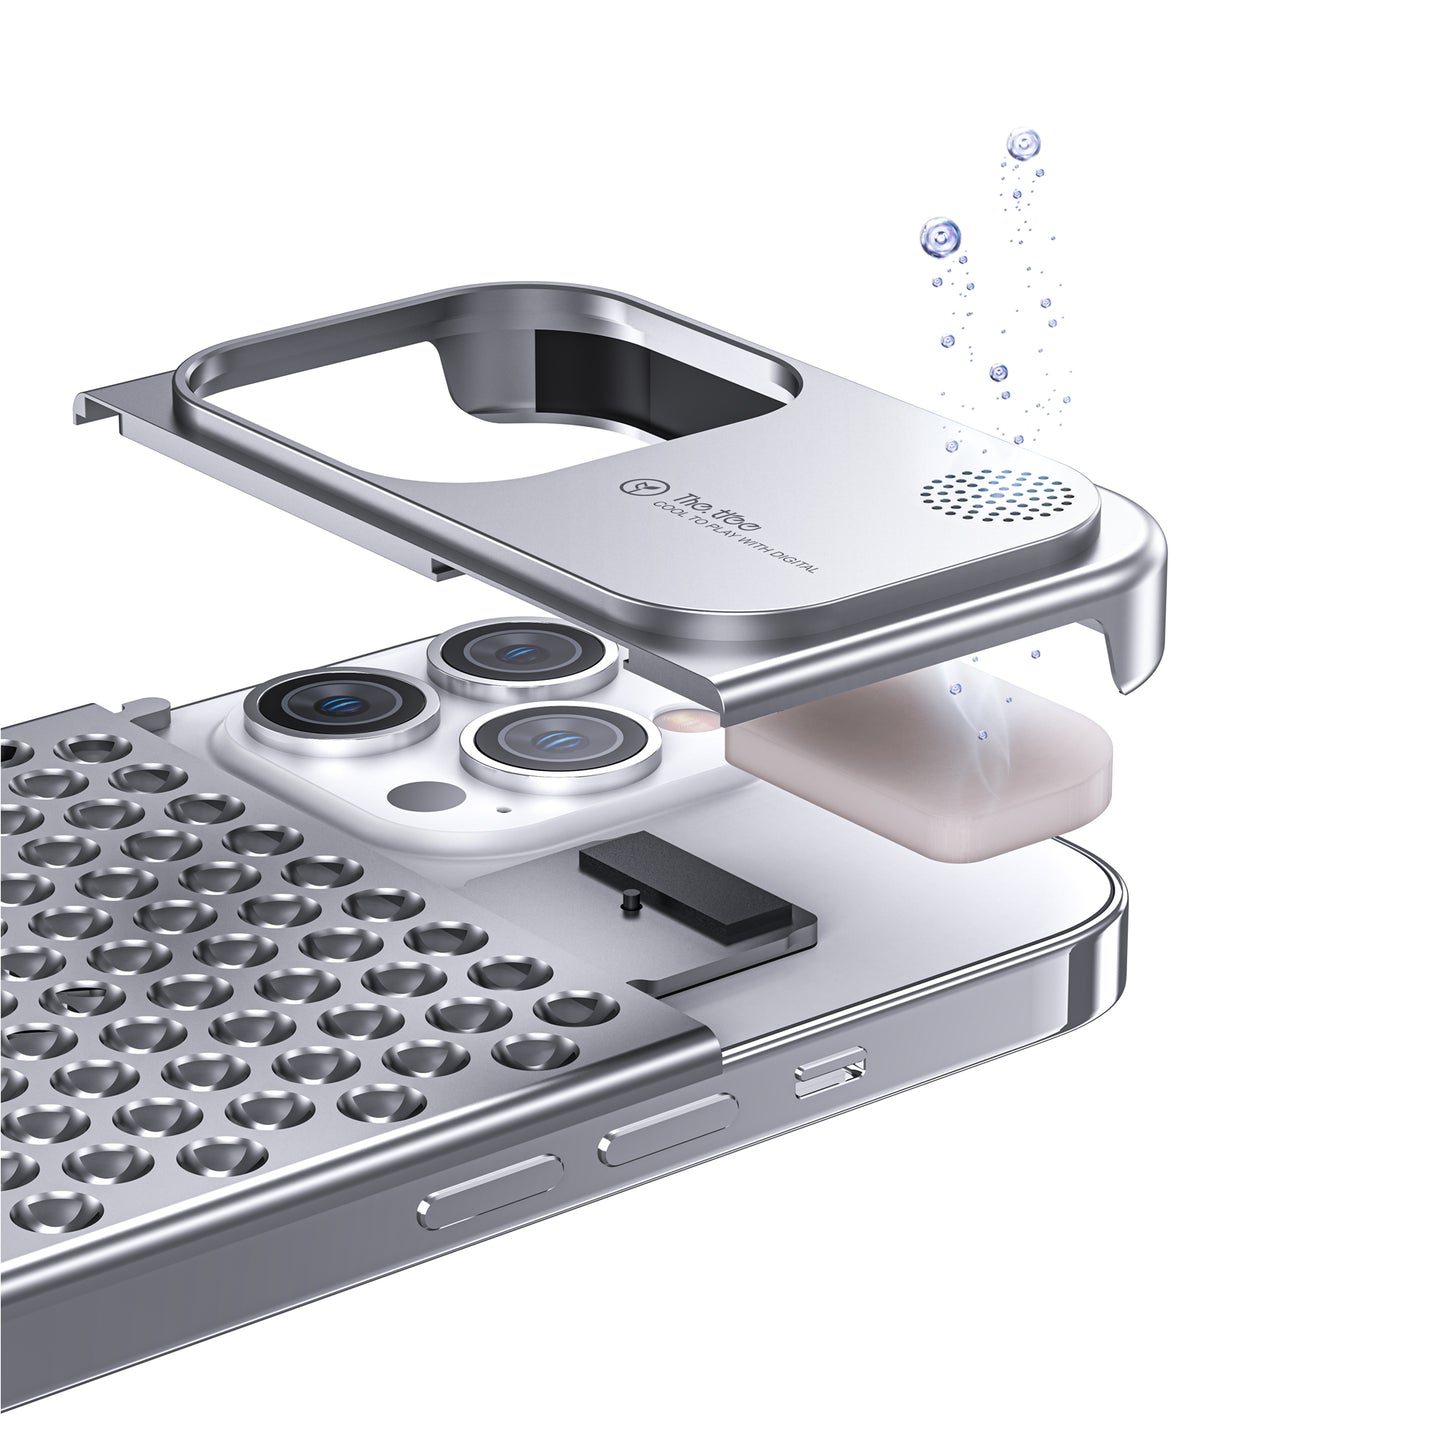 Aluminum Mesh iPhone Case